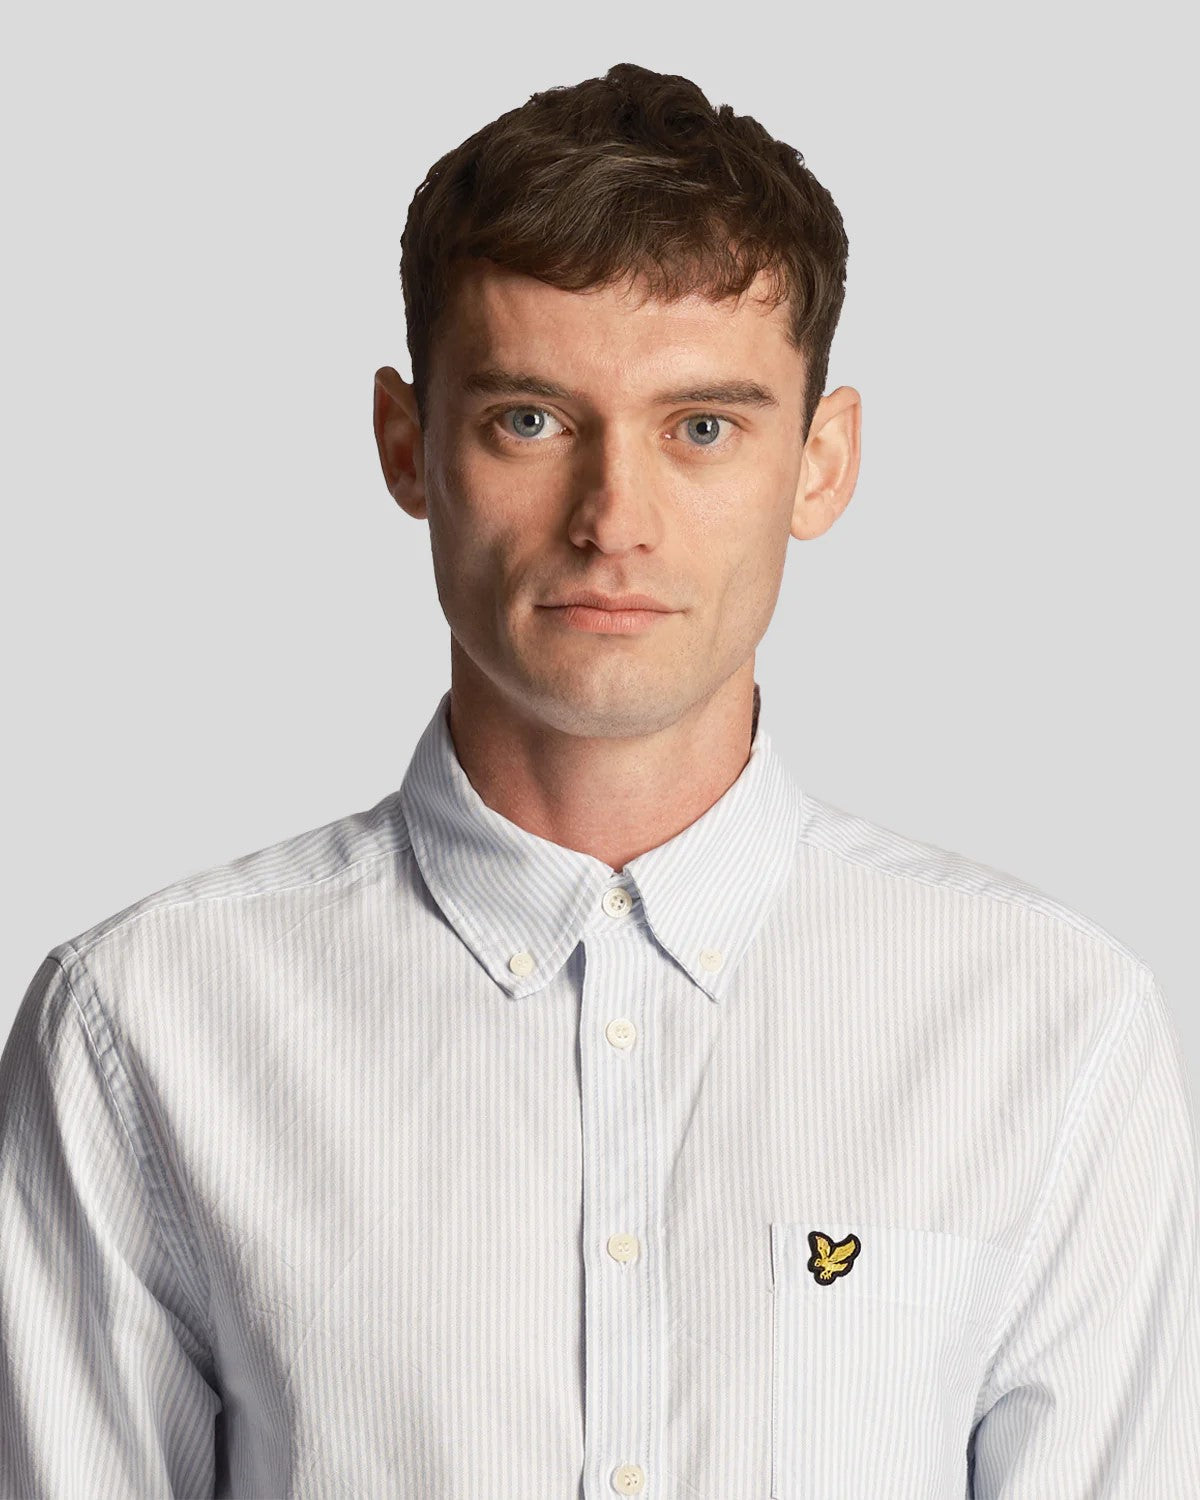 Stripe Oxford Shirt